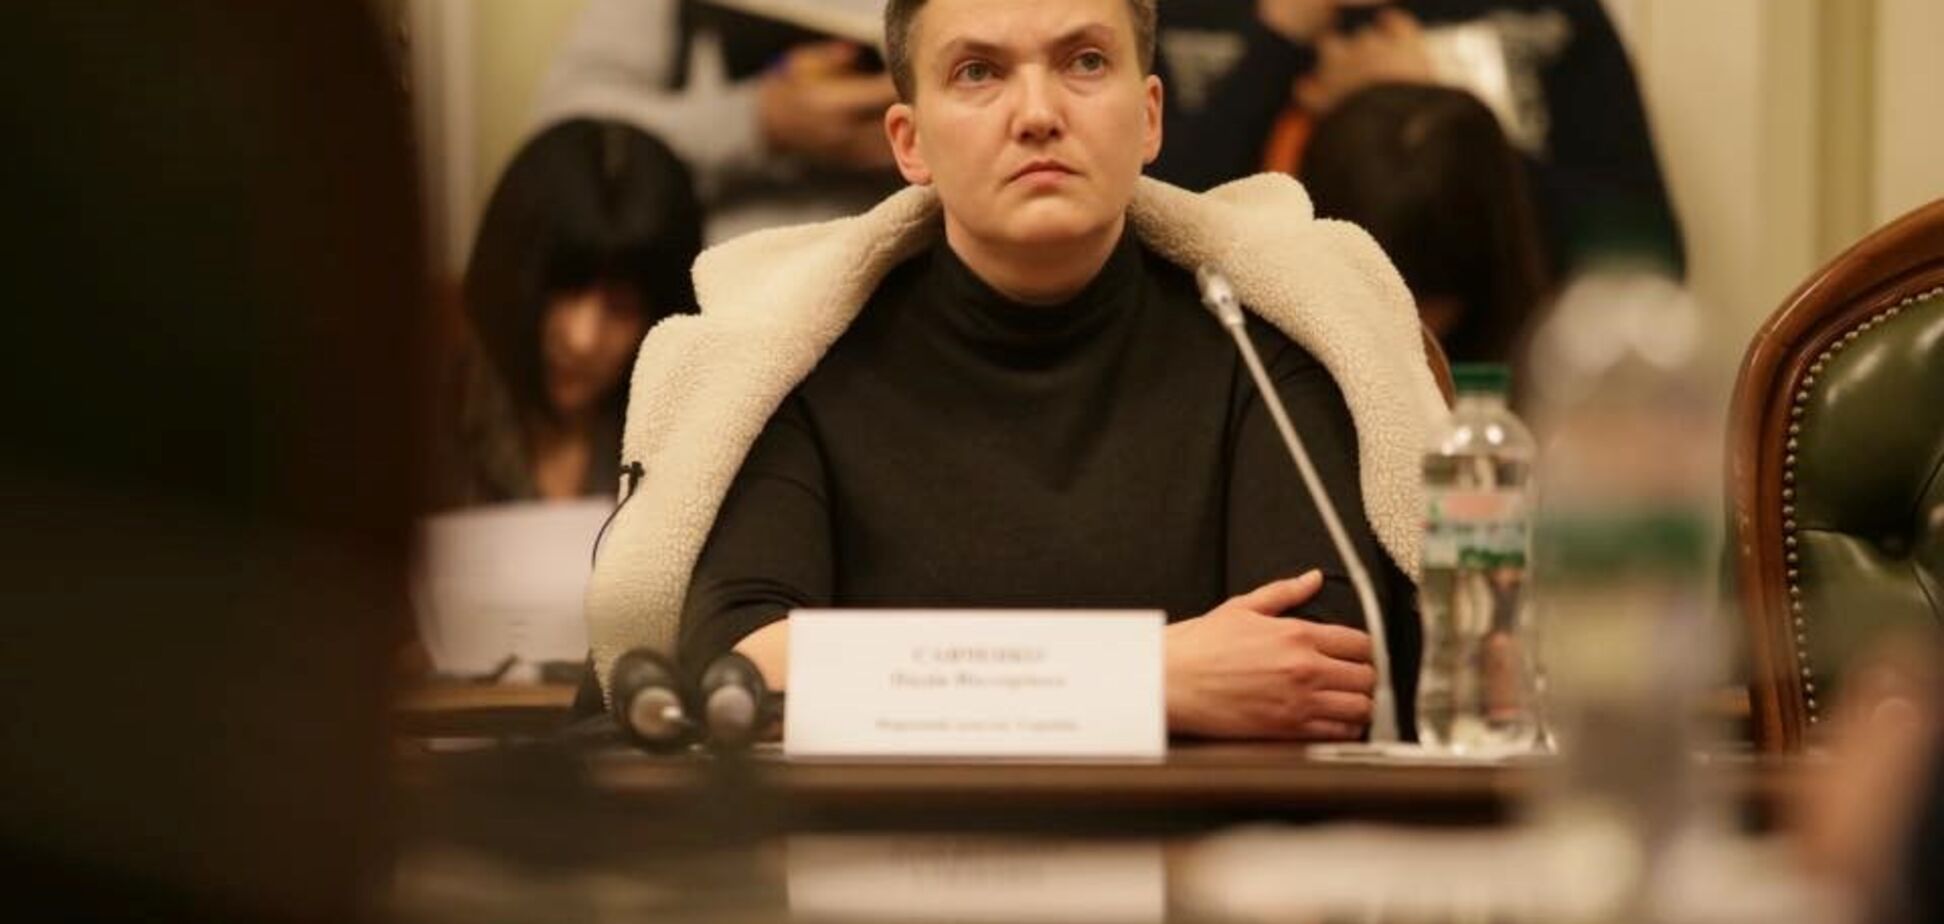 Задержание Савченко: какой реакции ждать от международного сообщества